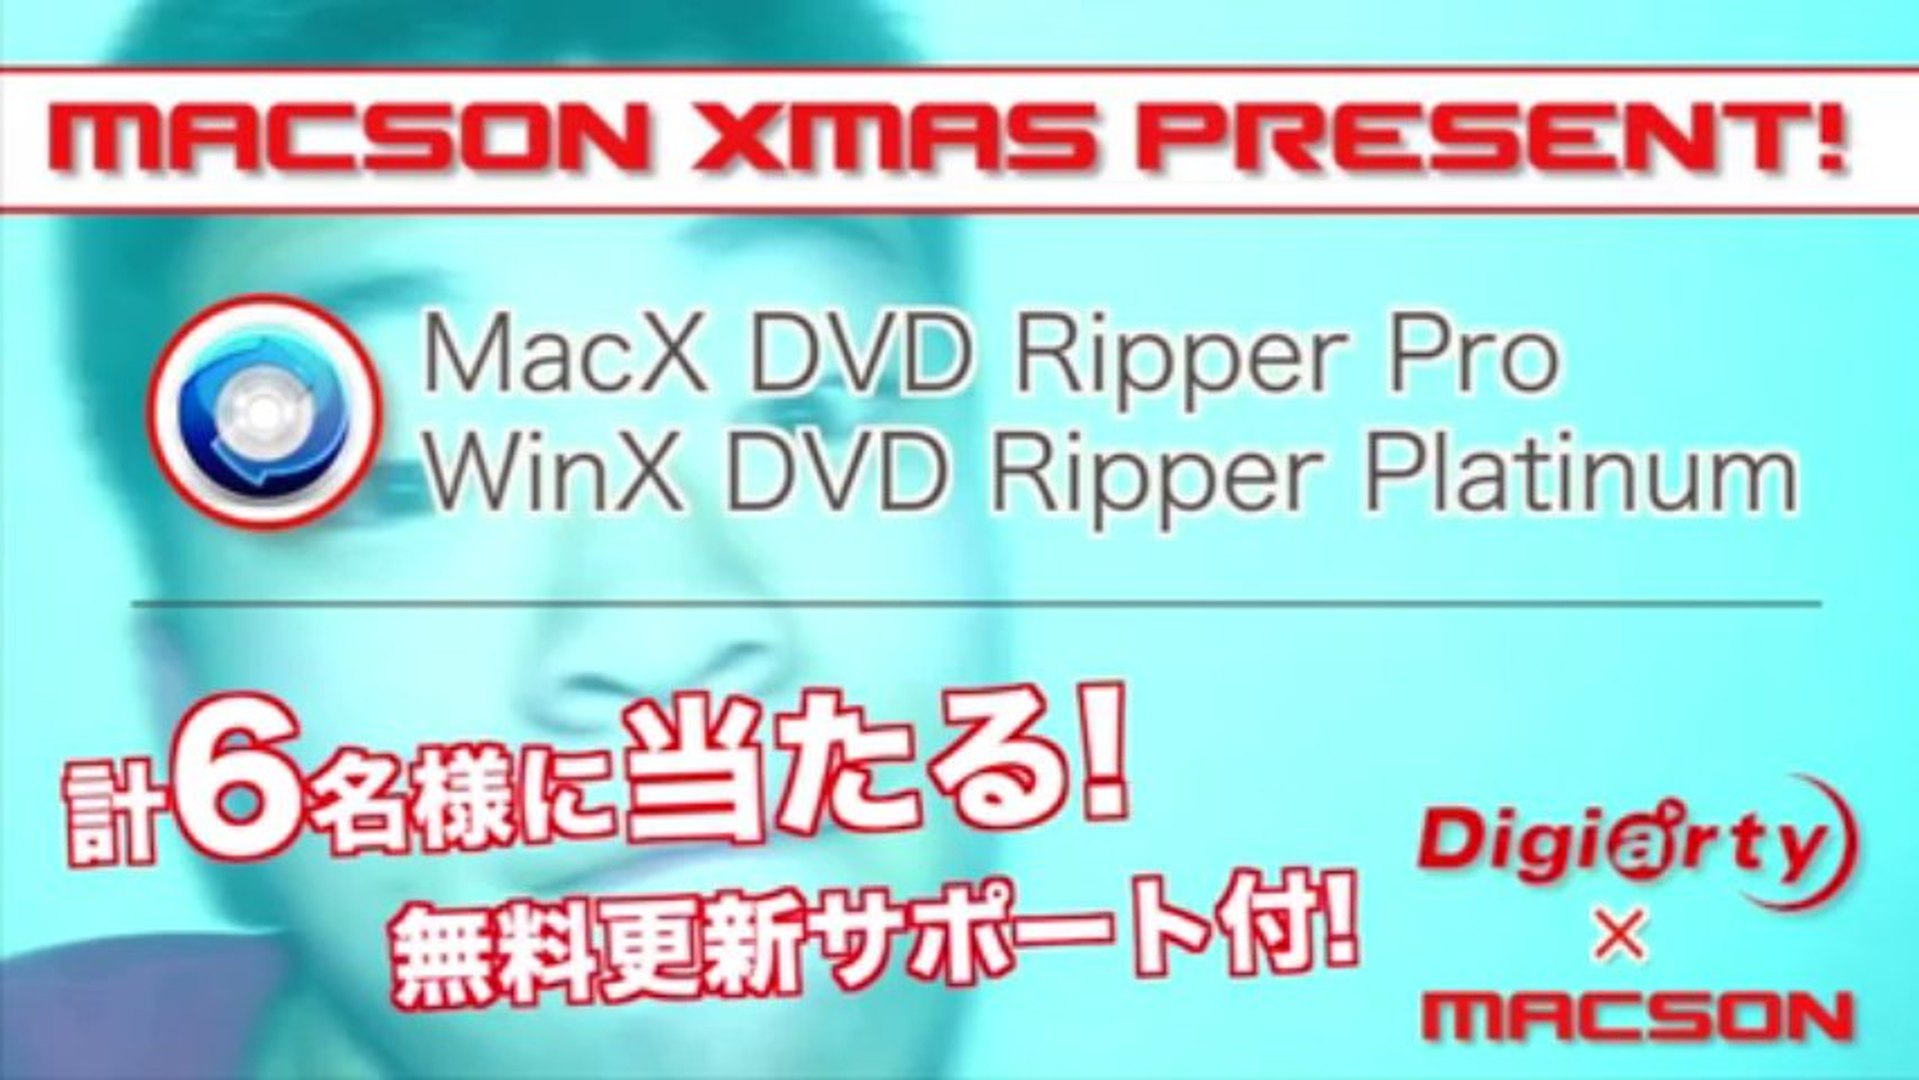 上選択 Macx Dvd Ripper Pro シリアル 人気の画像をダウンロードする